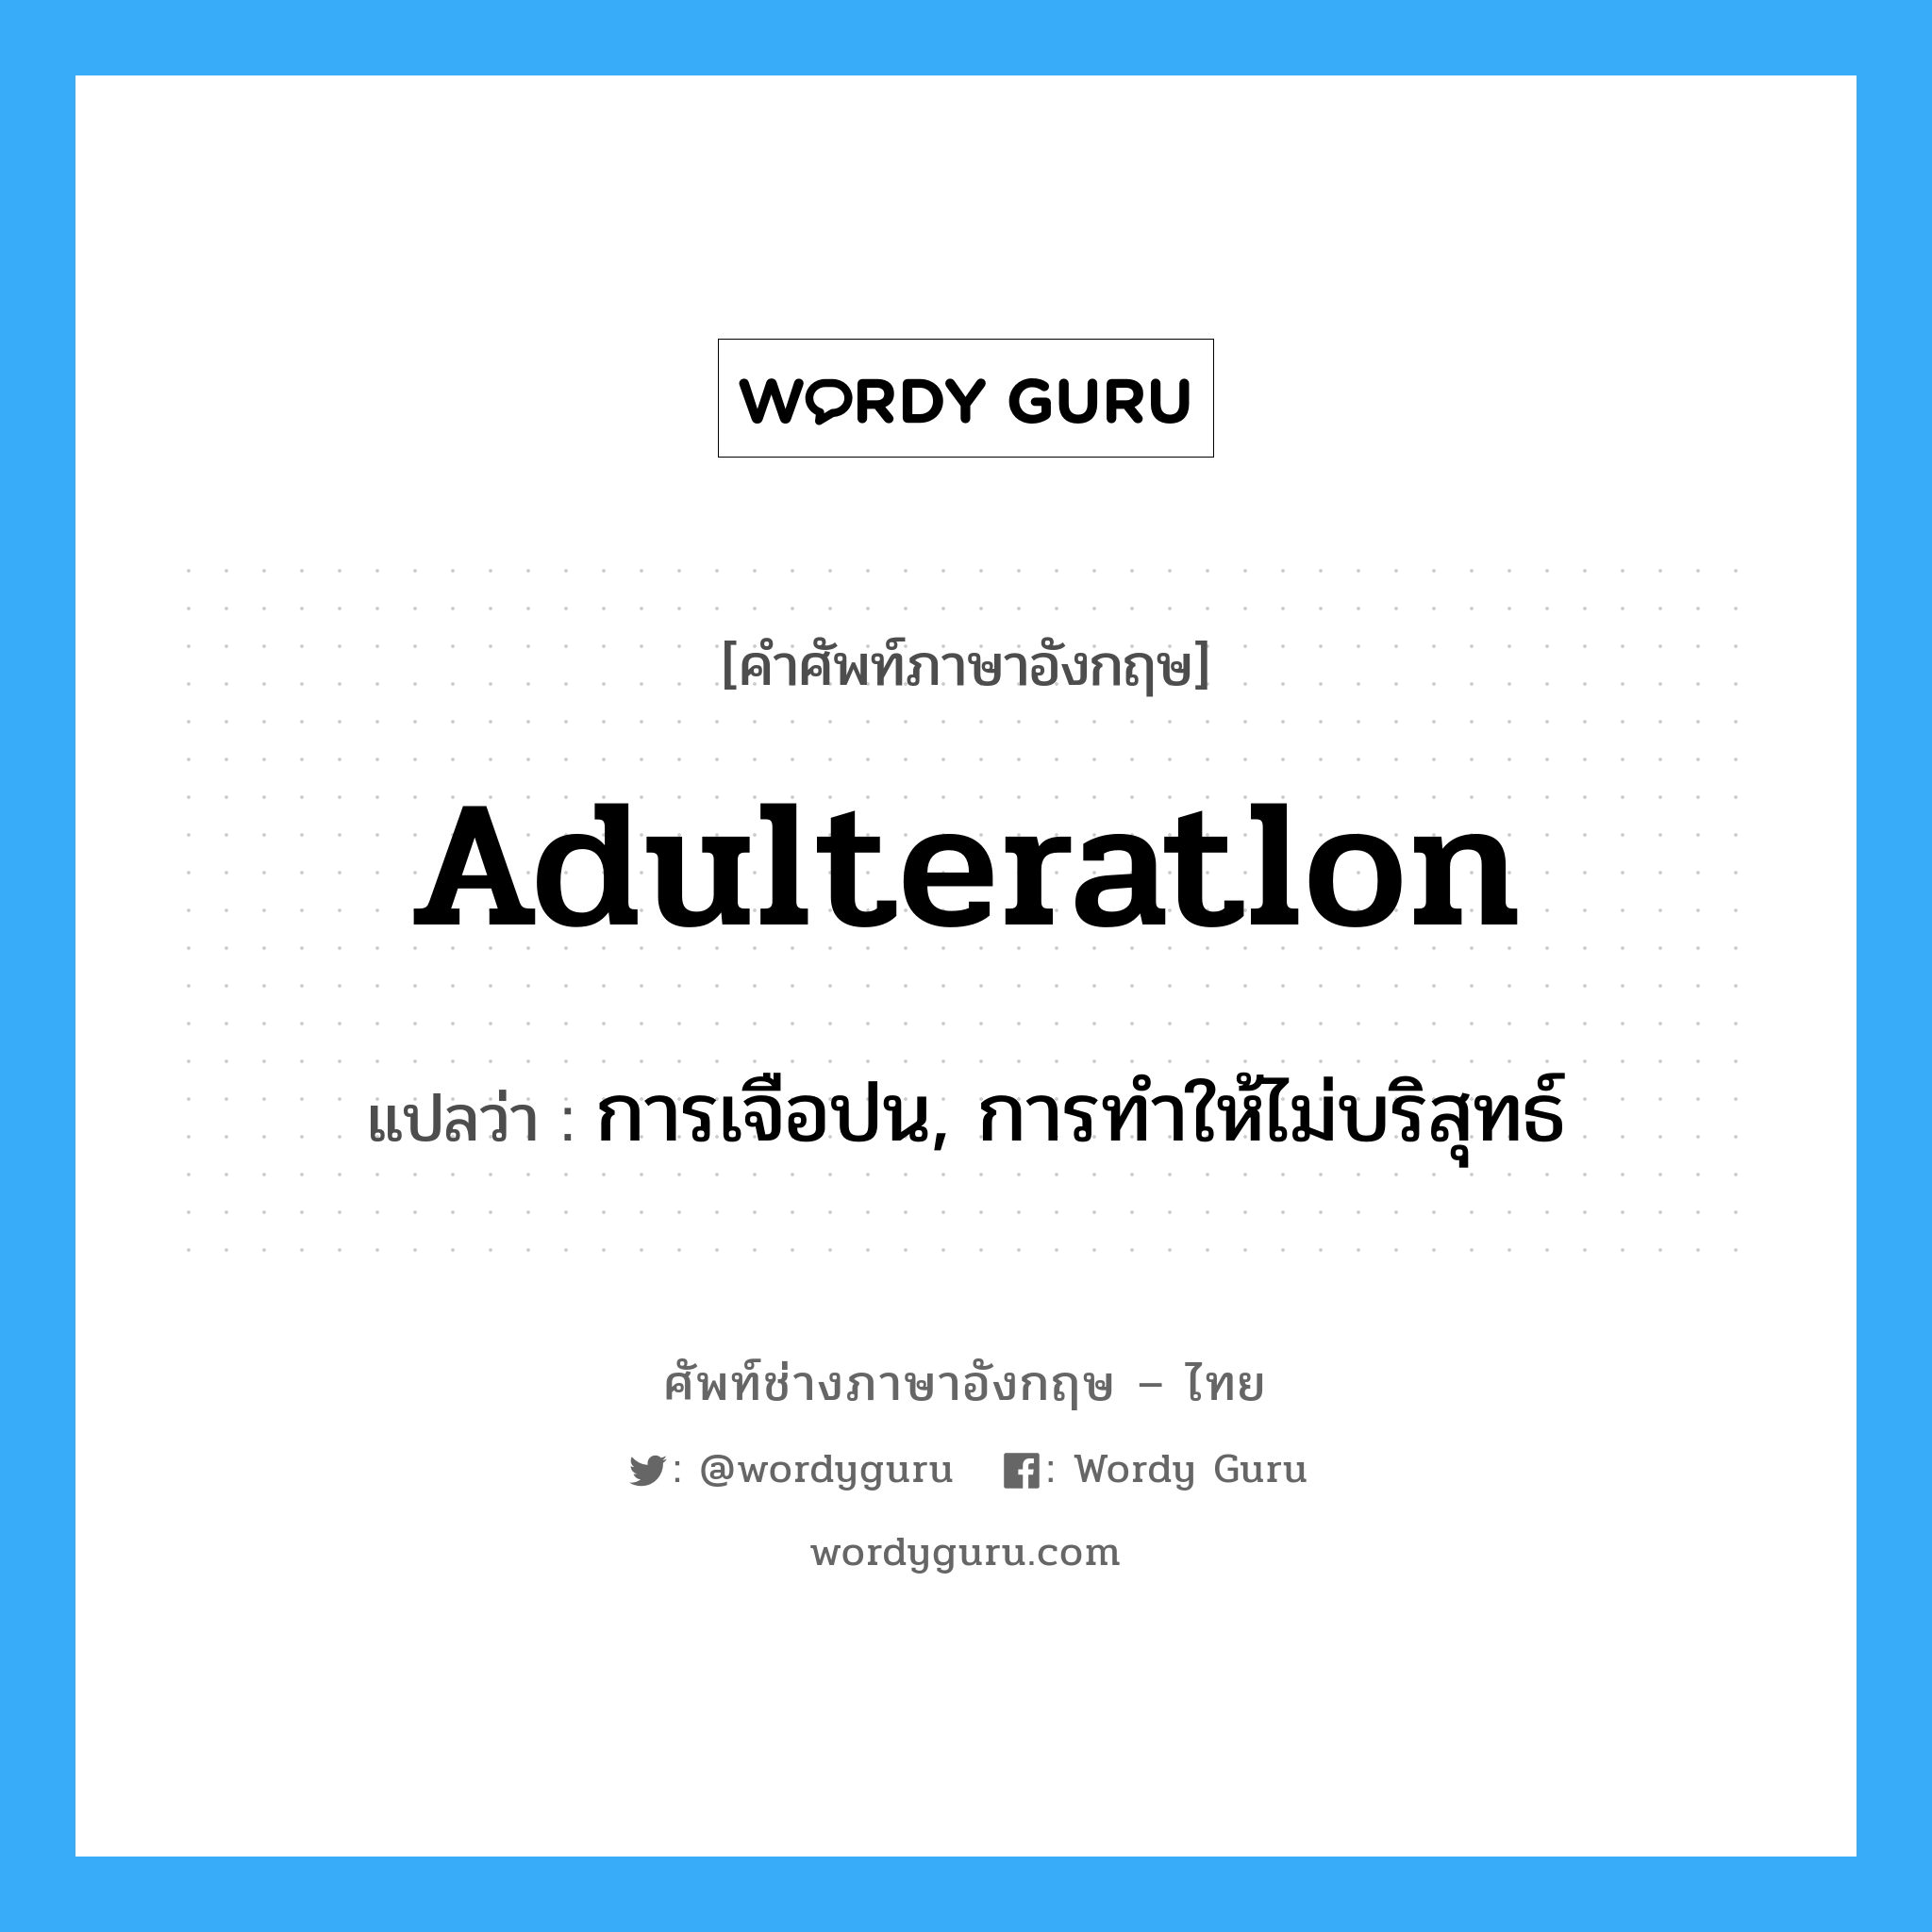 adulteratlon แปลว่า?, คำศัพท์ช่างภาษาอังกฤษ - ไทย adulteratlon คำศัพท์ภาษาอังกฤษ adulteratlon แปลว่า การเจือปน, การทำให้ไม่บริสุทธ์